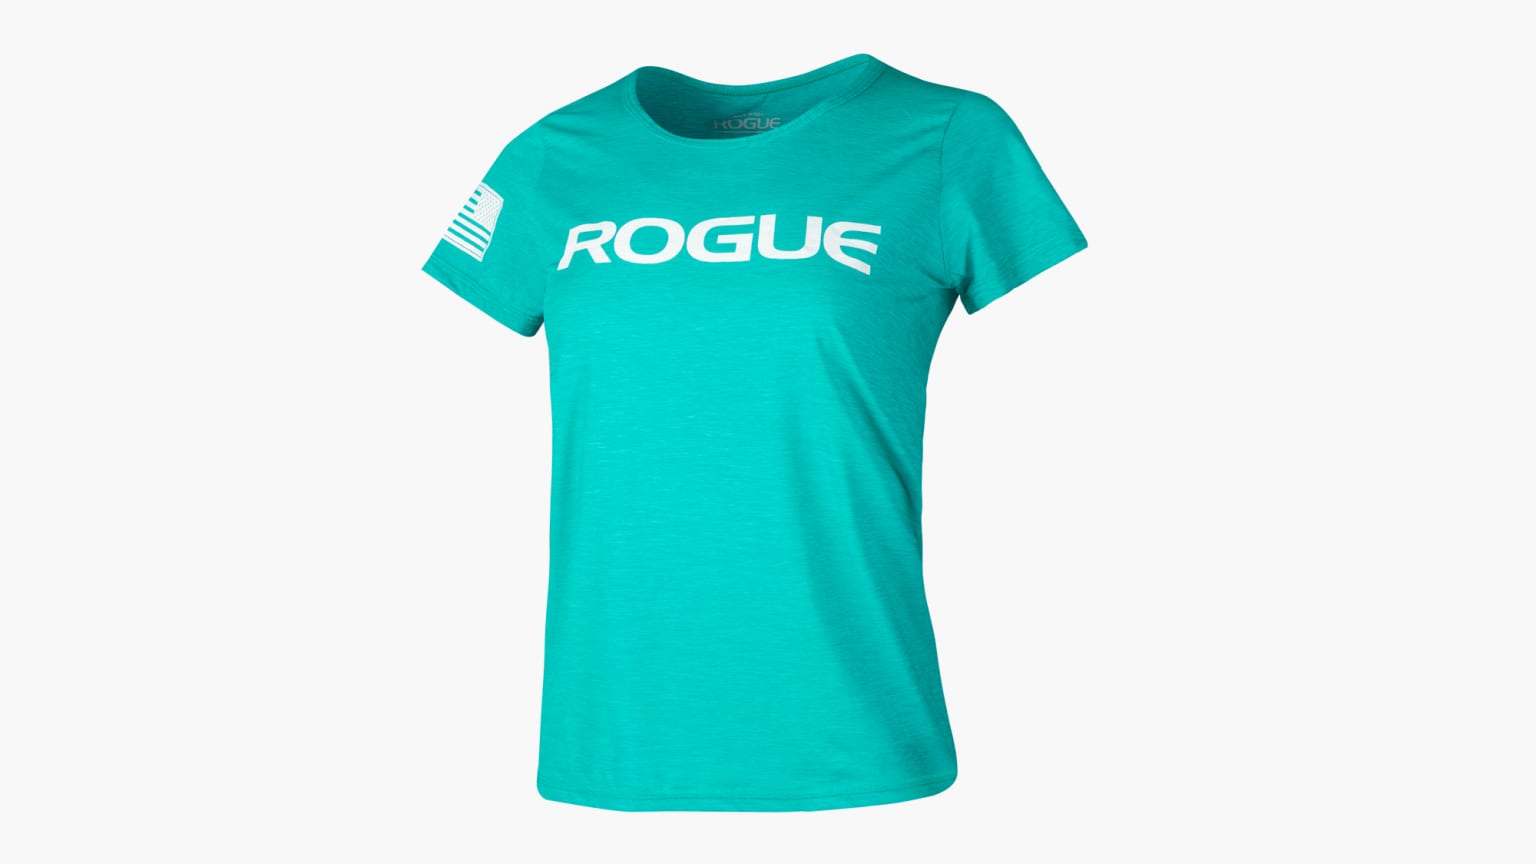 Rogue Women's Performance Sun Shirt